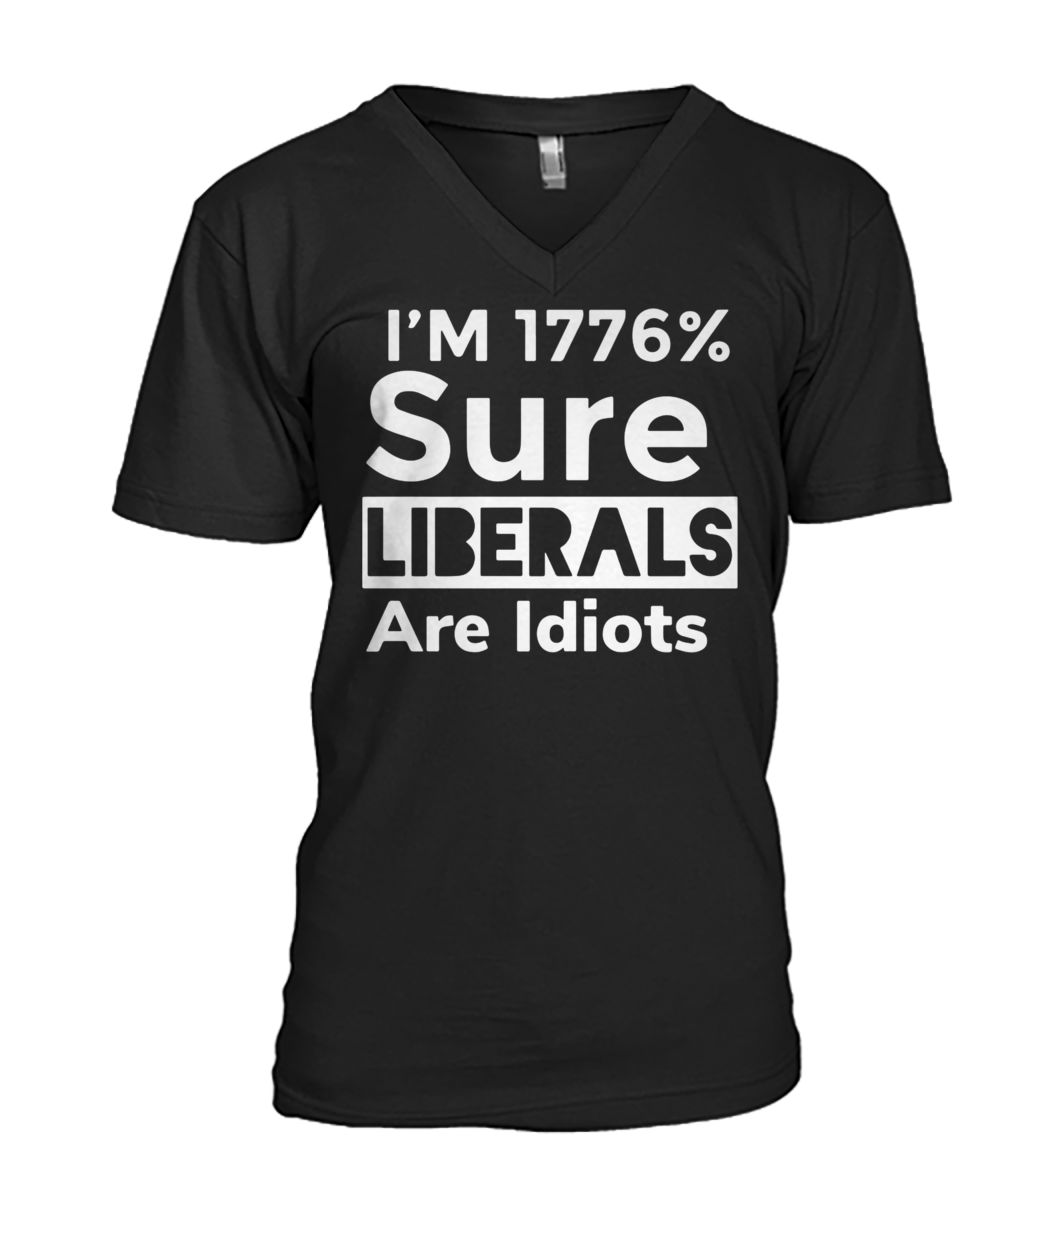 Official I'm 1776% sure liberals are idiots mens v-neck